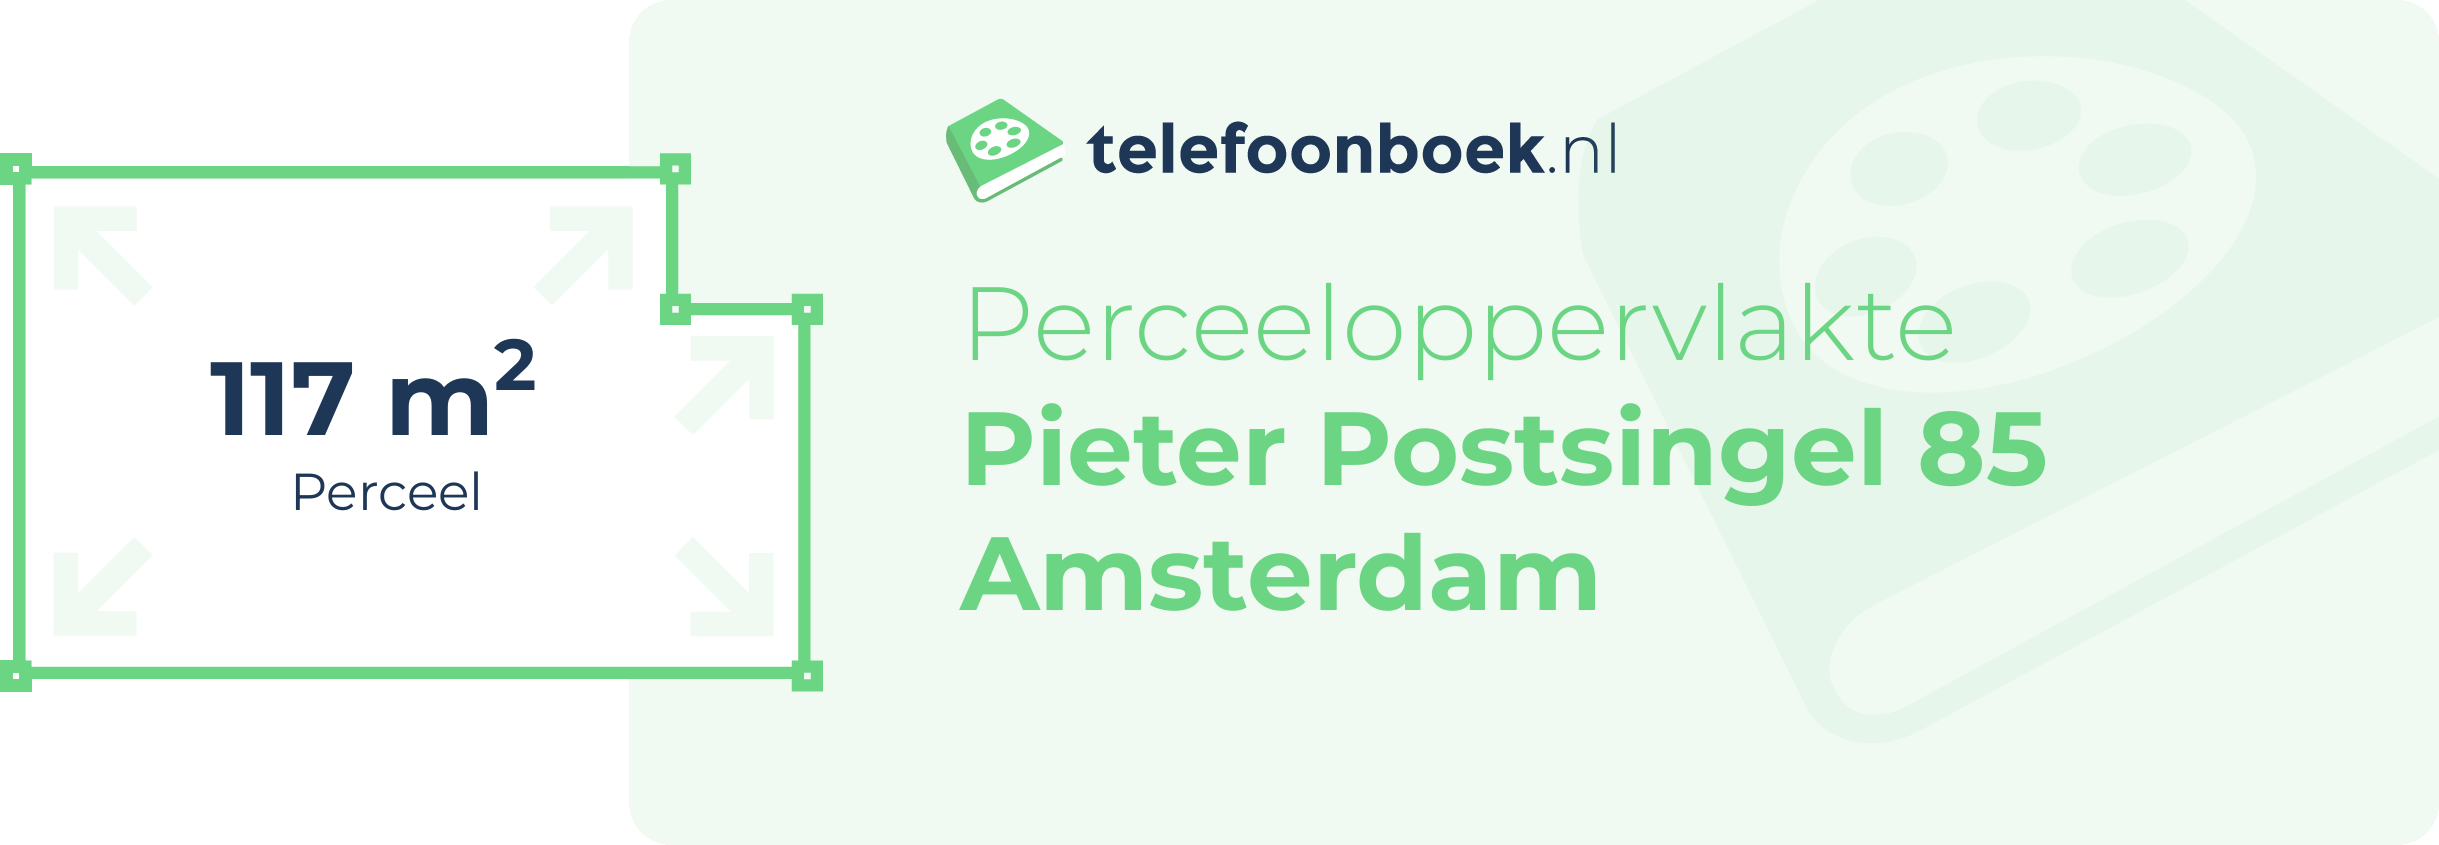 Perceeloppervlakte Pieter Postsingel 85 Amsterdam